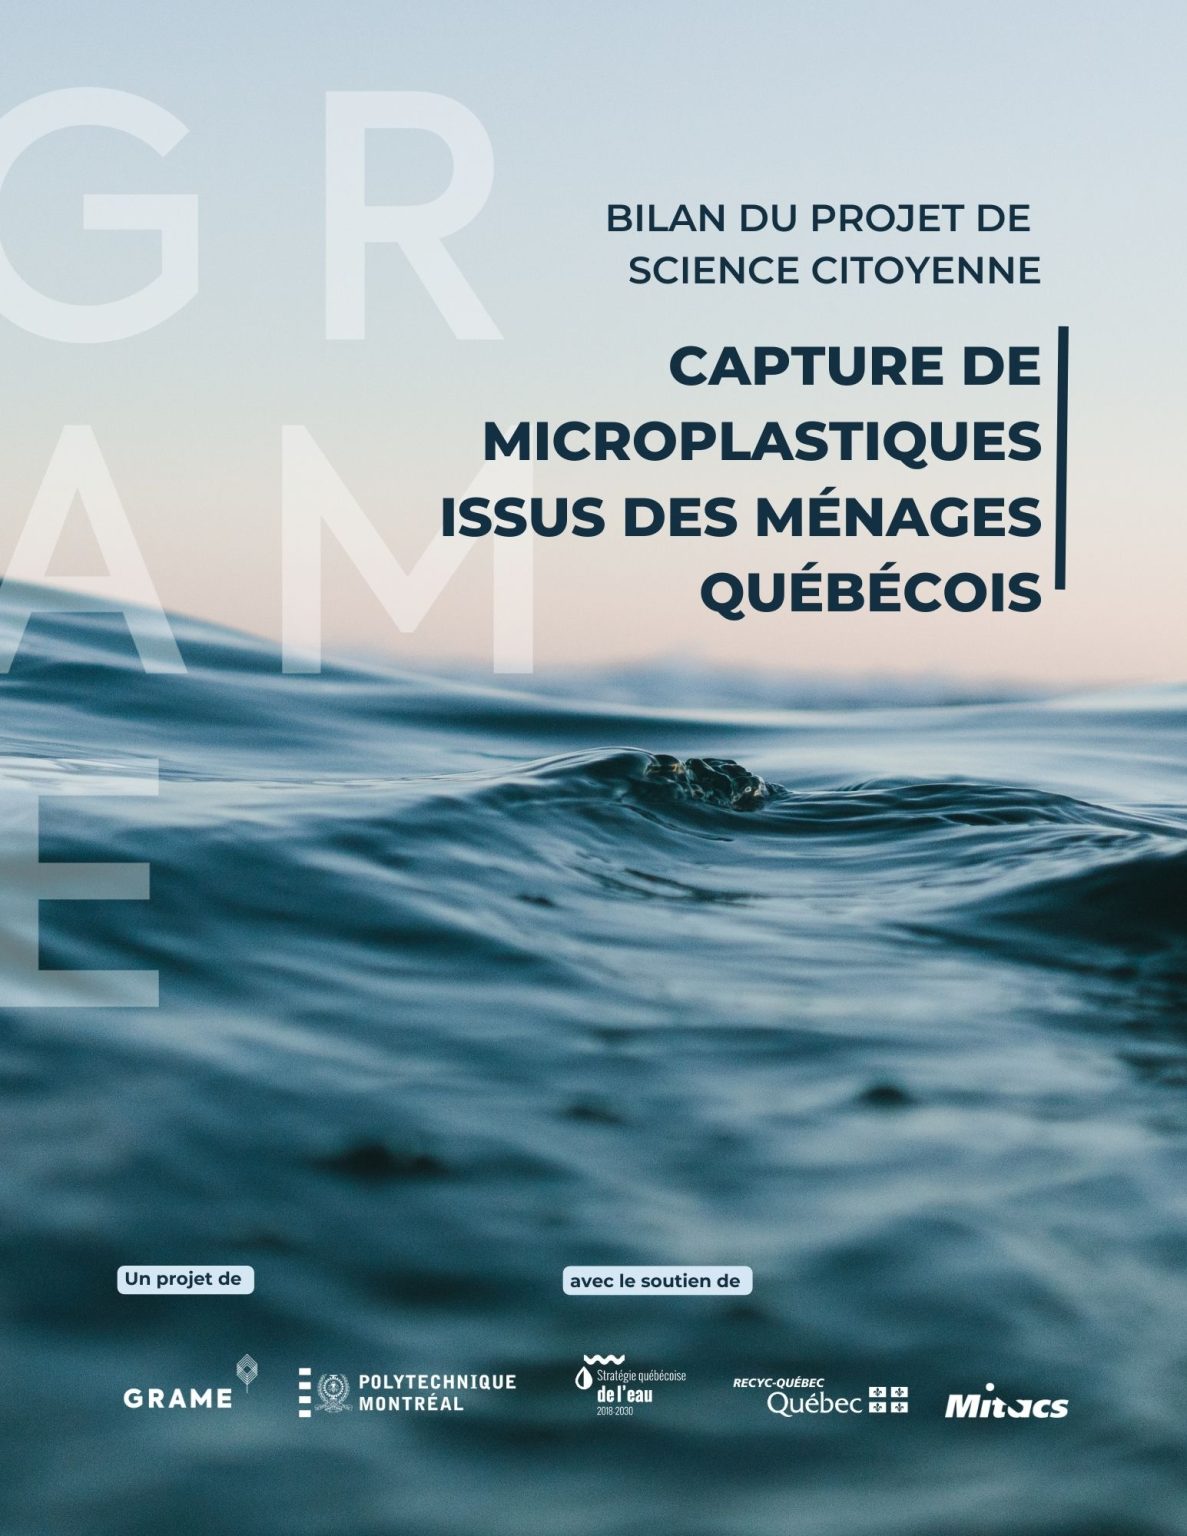 Bilan de projet - Capture de microplastiques issus des ménages québécois